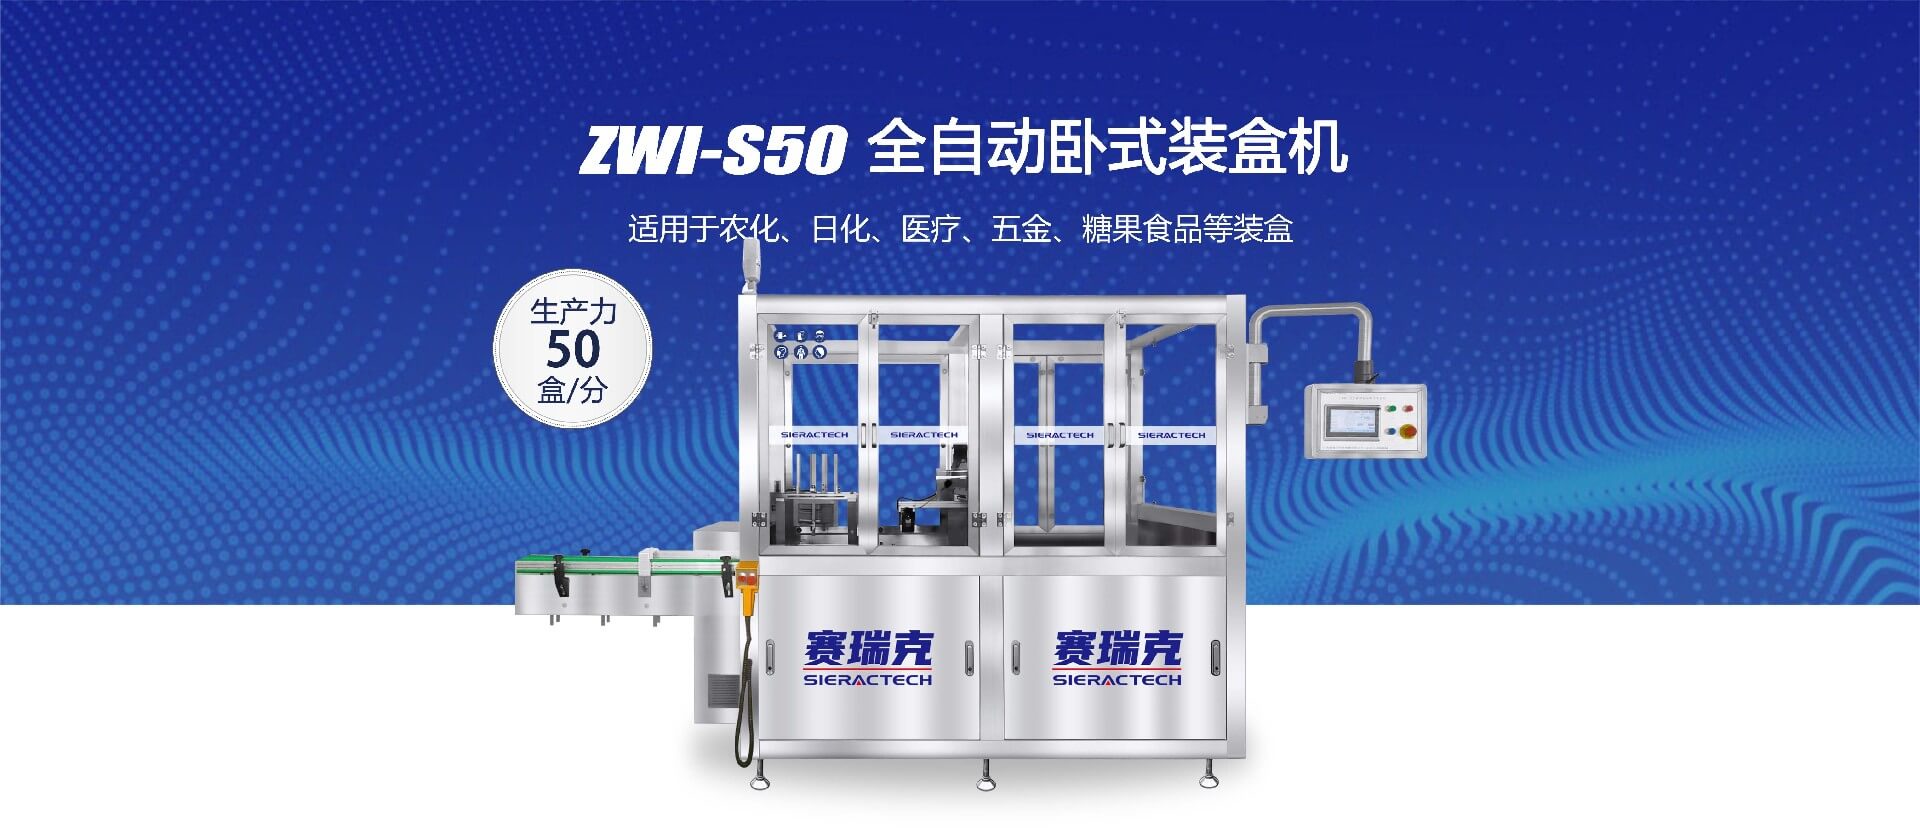 ZWI-S50卧式装盒机